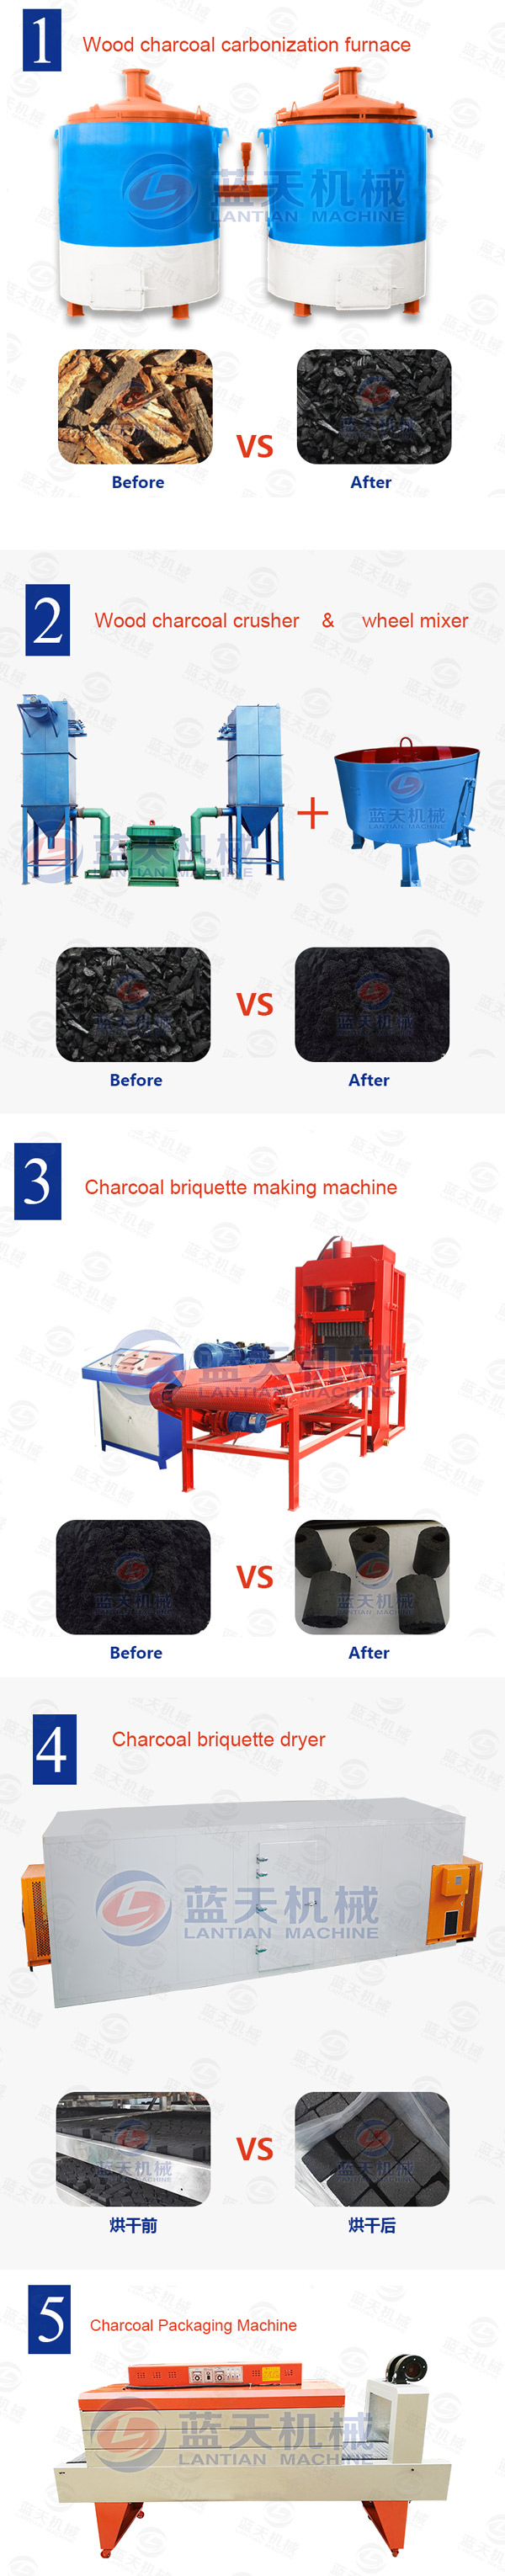 charcoal briquette making equipment